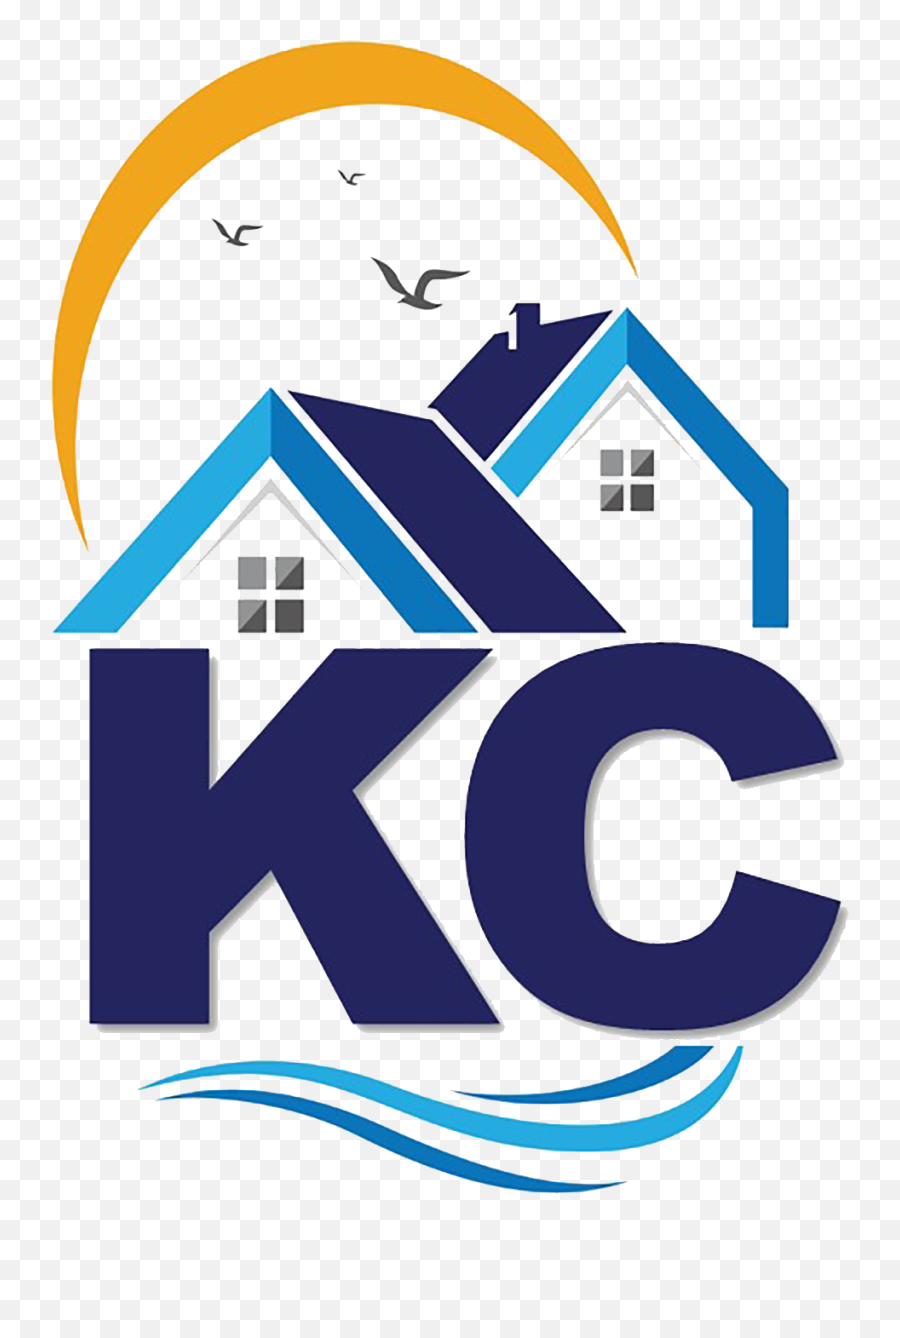 Kc Cottage Rentals Emoji,Gmail Logo Transparent